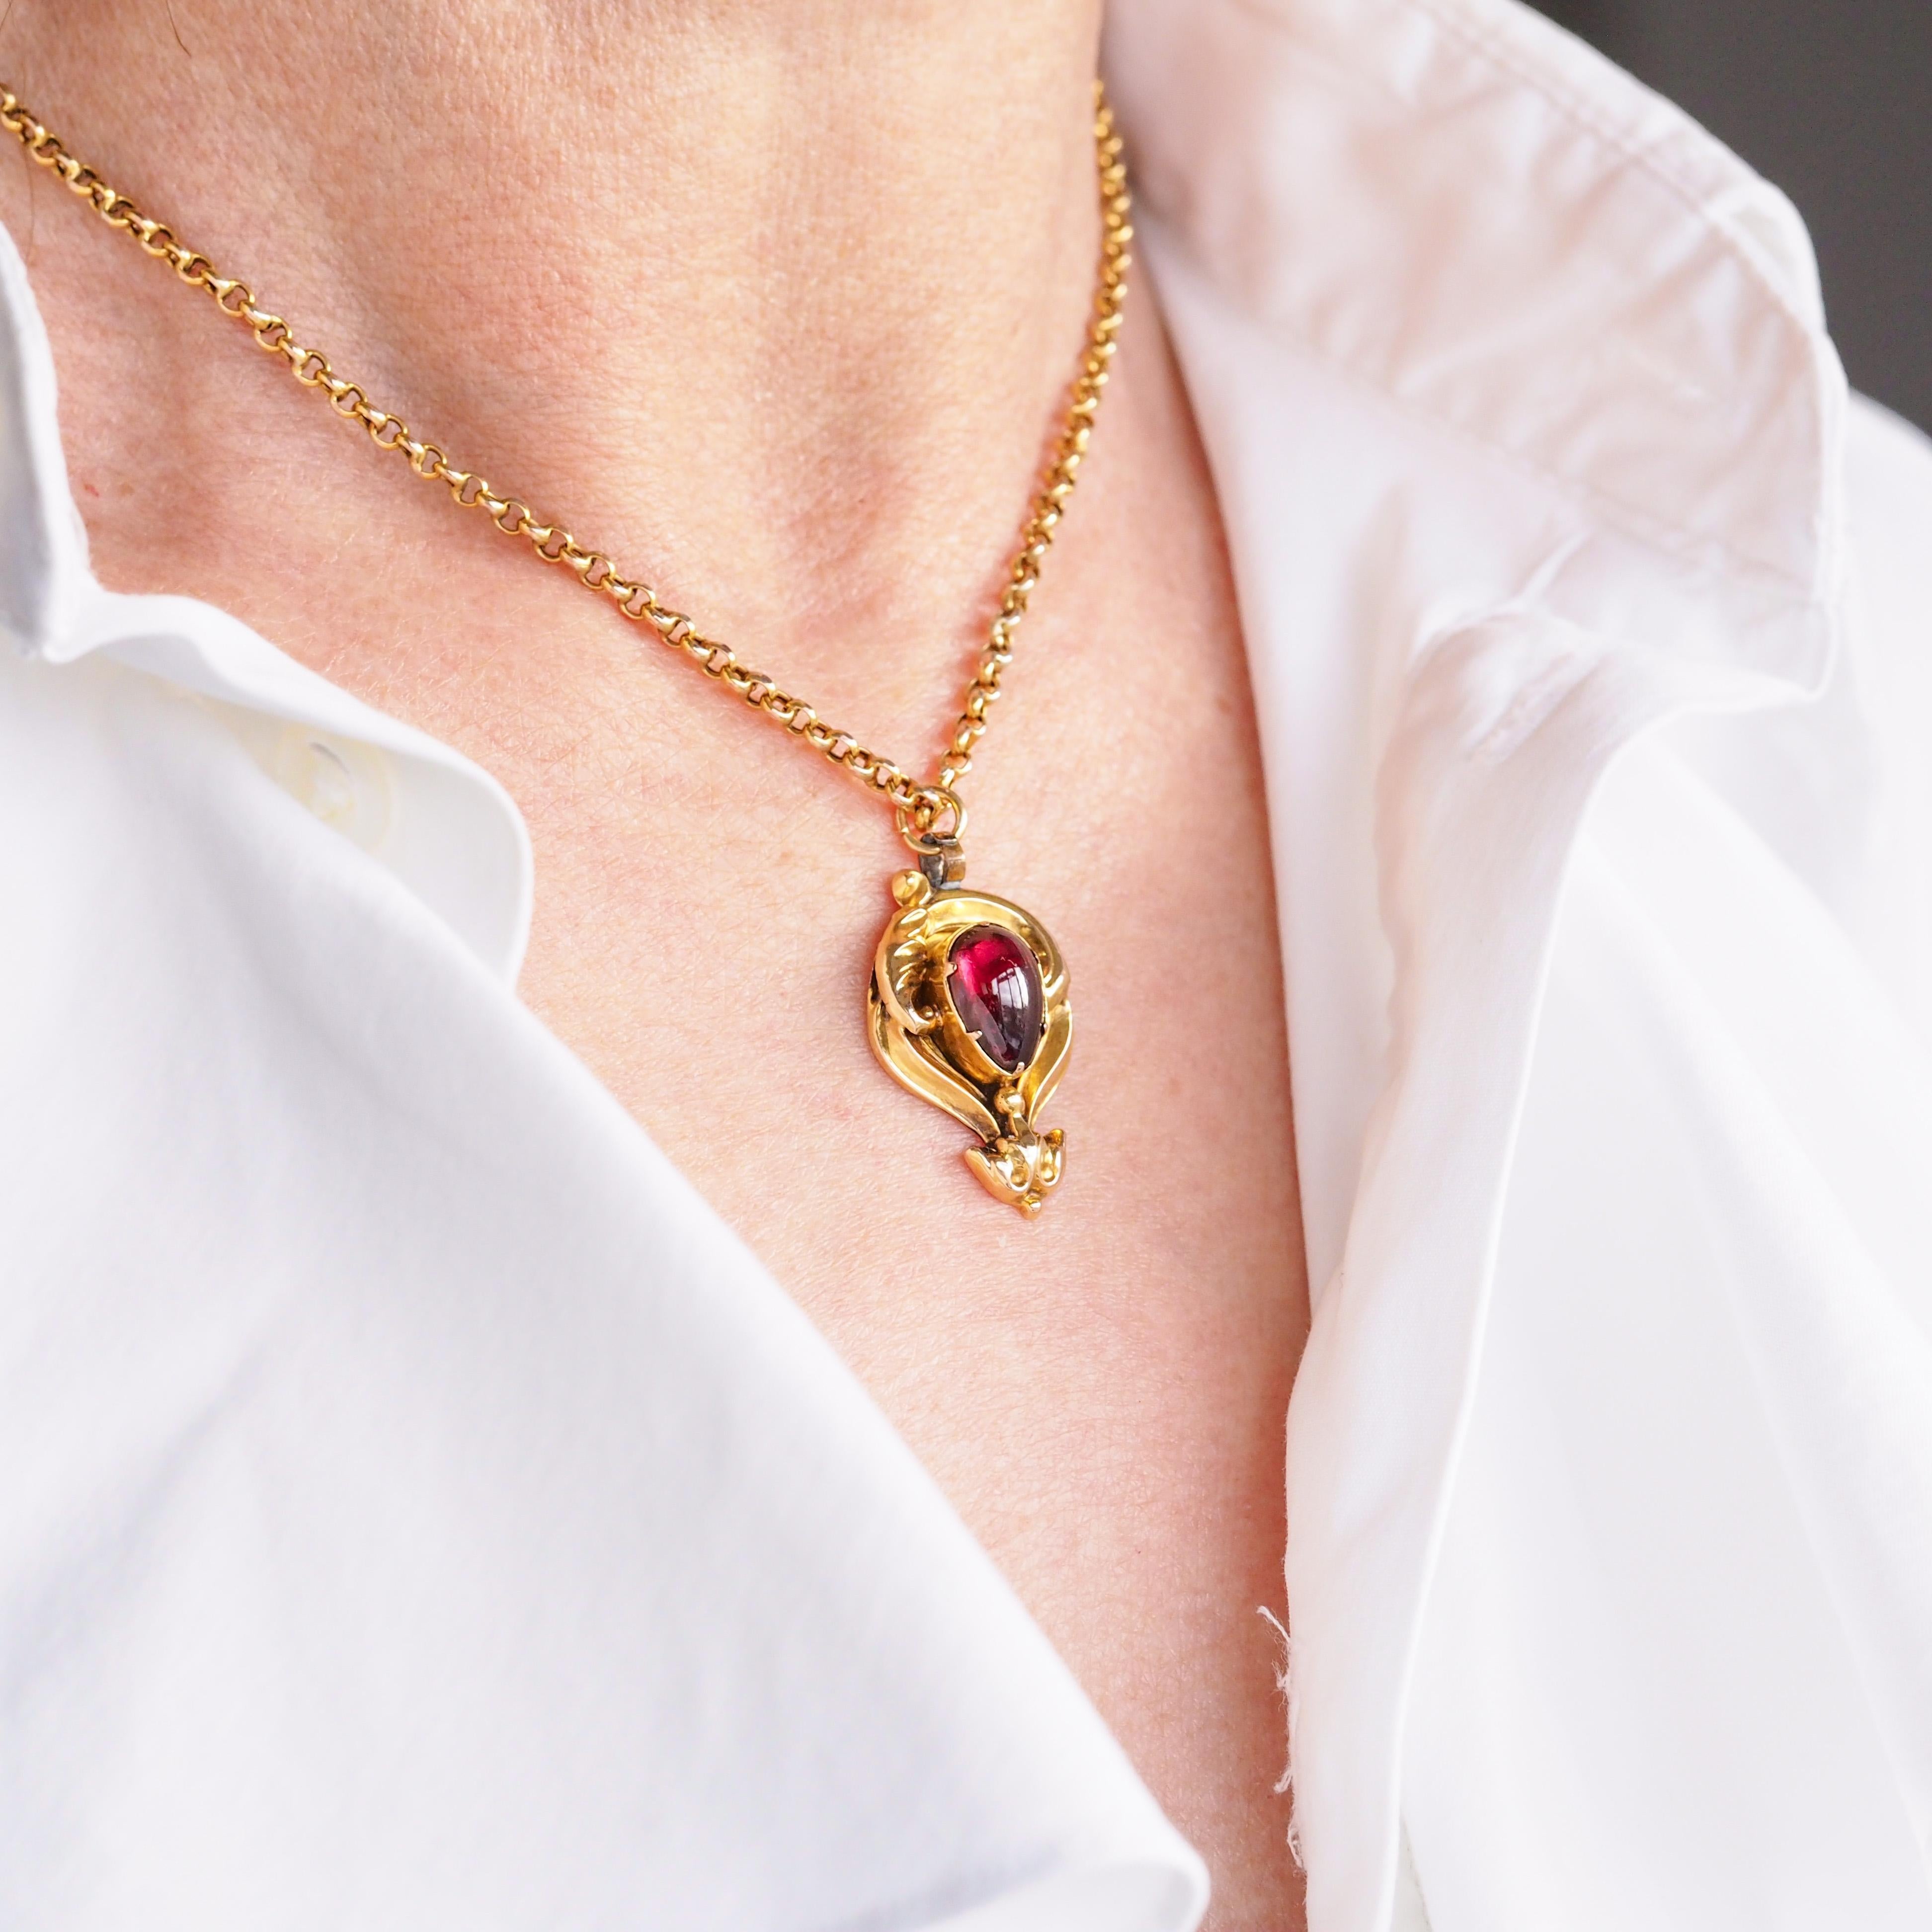 Nous sommes ravis d'offrir ce majestueux collier victorien antique à pendentif en grenat cabochon, serti en or 18ct et réalisé au début de la période victorienne, vers 1840. 
 
La monture en or présente une forme opulente et élégante avec un design